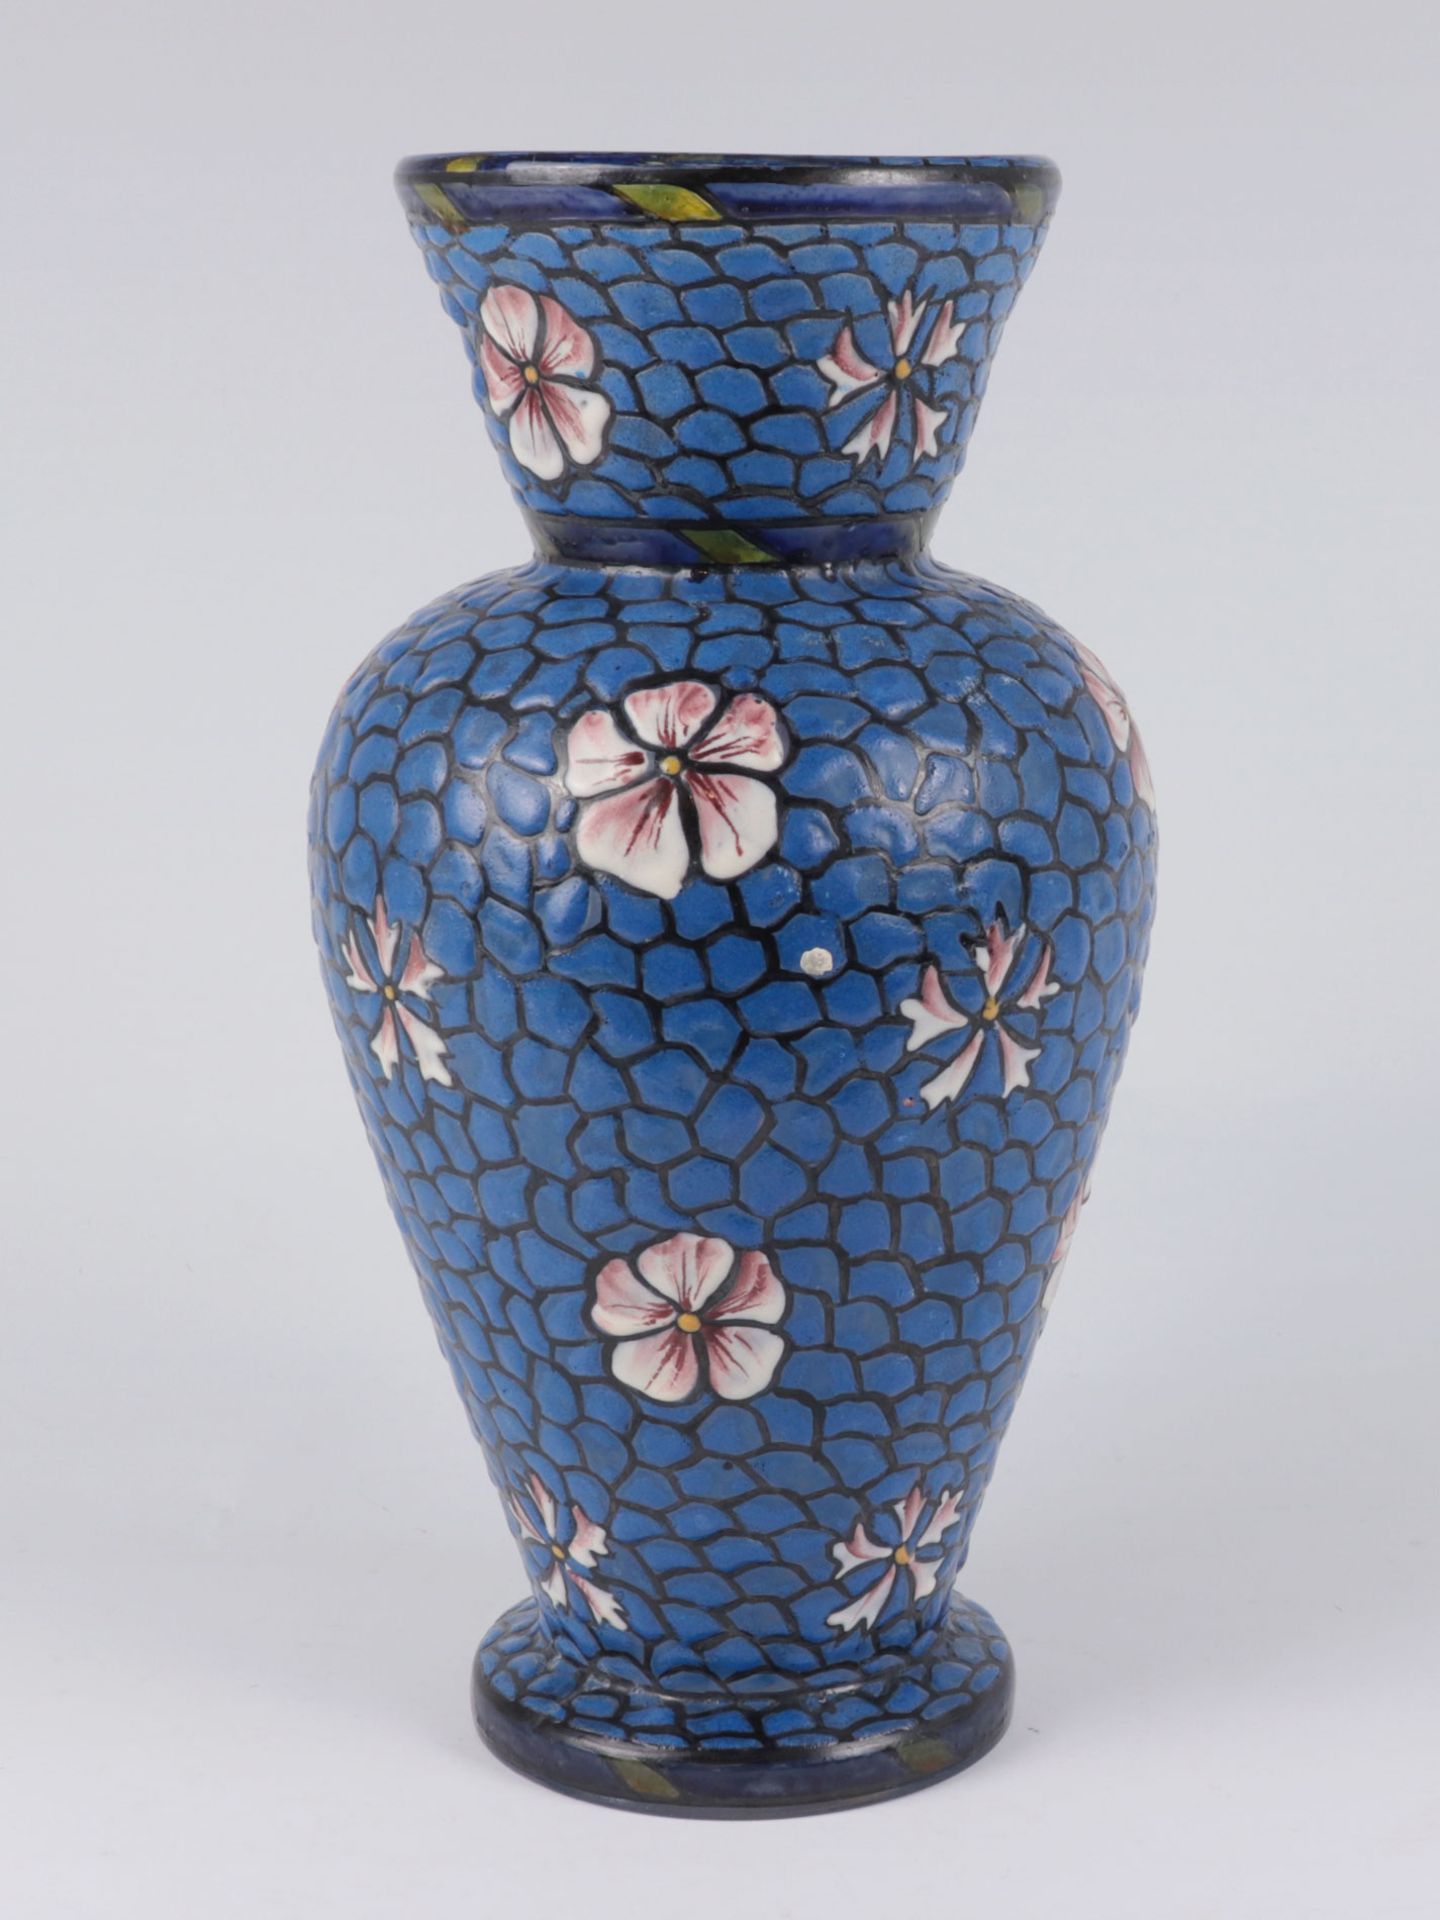 Vase um 1910/20, Frankreich, im Stil von Mont Joye (Legras), farbloses Glas, ausgezoge - Bild 2 aus 4